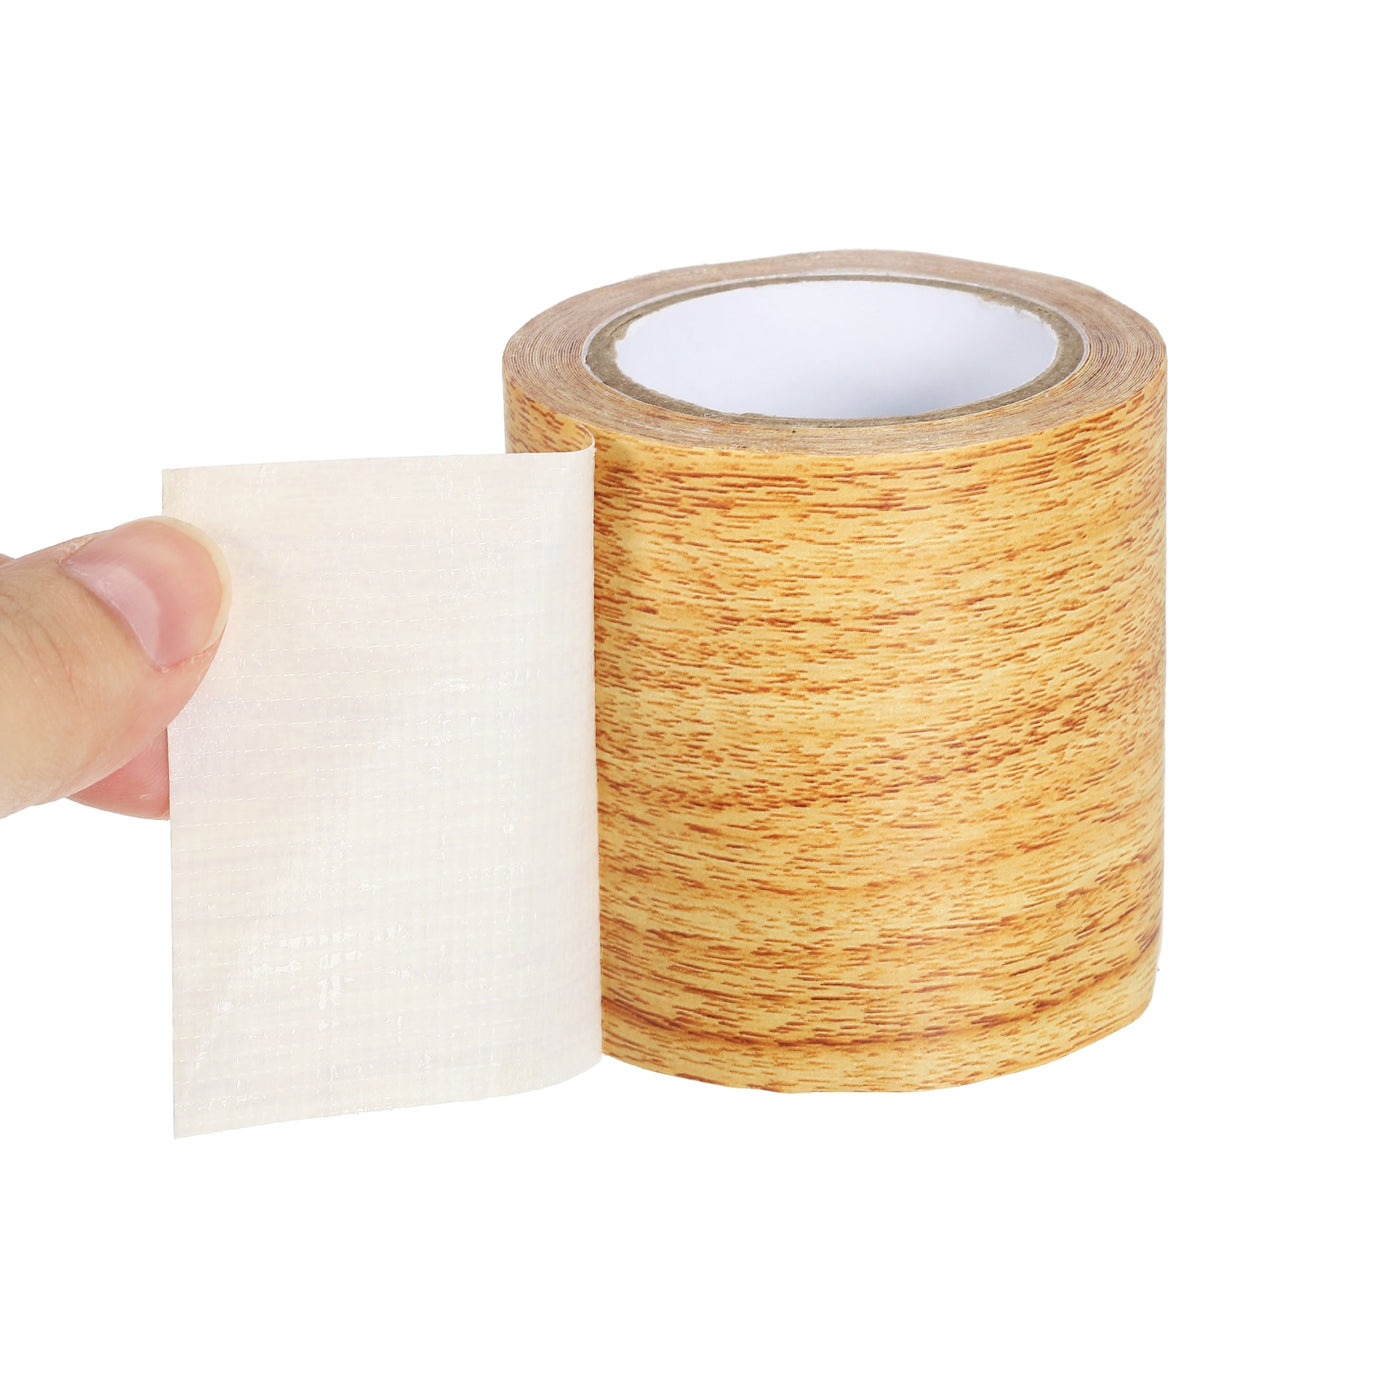 Harfington Wood Grain Repair Tape 2.2"X30', Self Adhesive Realistic Patch, Natural Oak